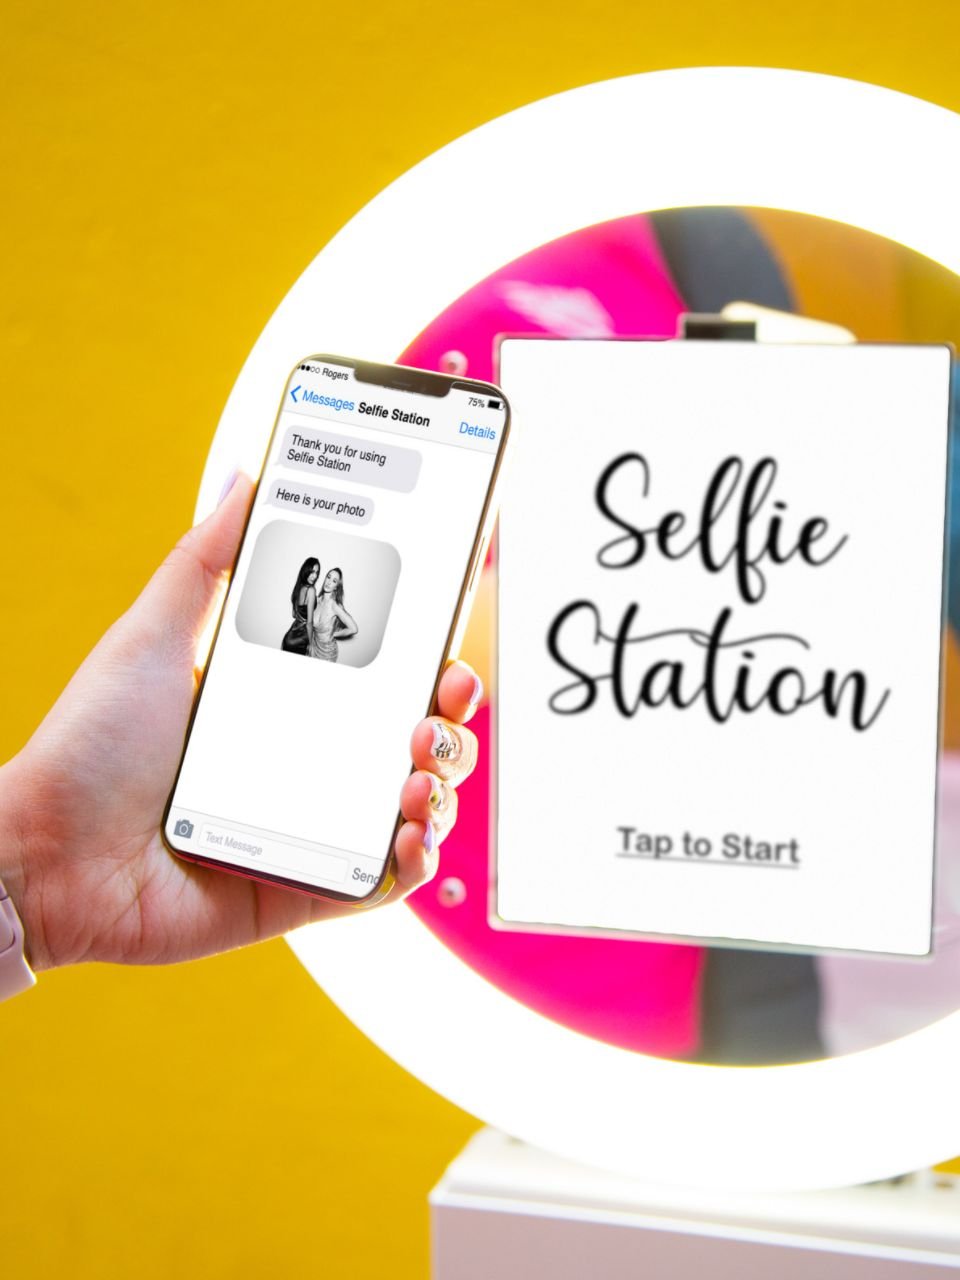 Selfie Station Rental Vancouver